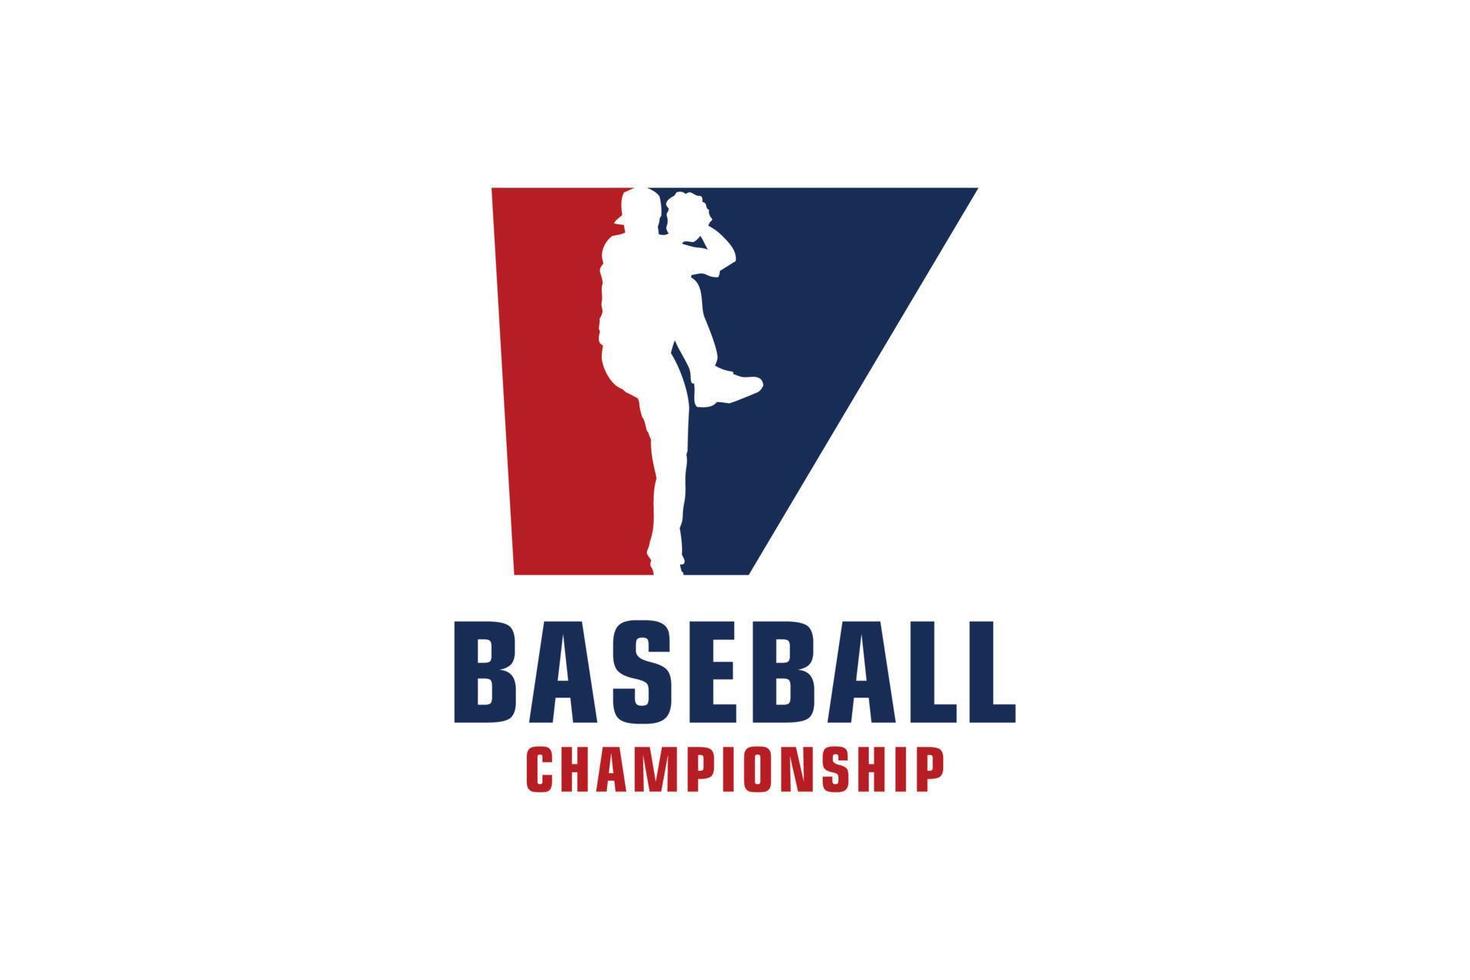 Buchstabe v mit Baseball-Logo-Design. Vektordesign-Vorlagenelemente für Sportteams oder Corporate Identity. vektor